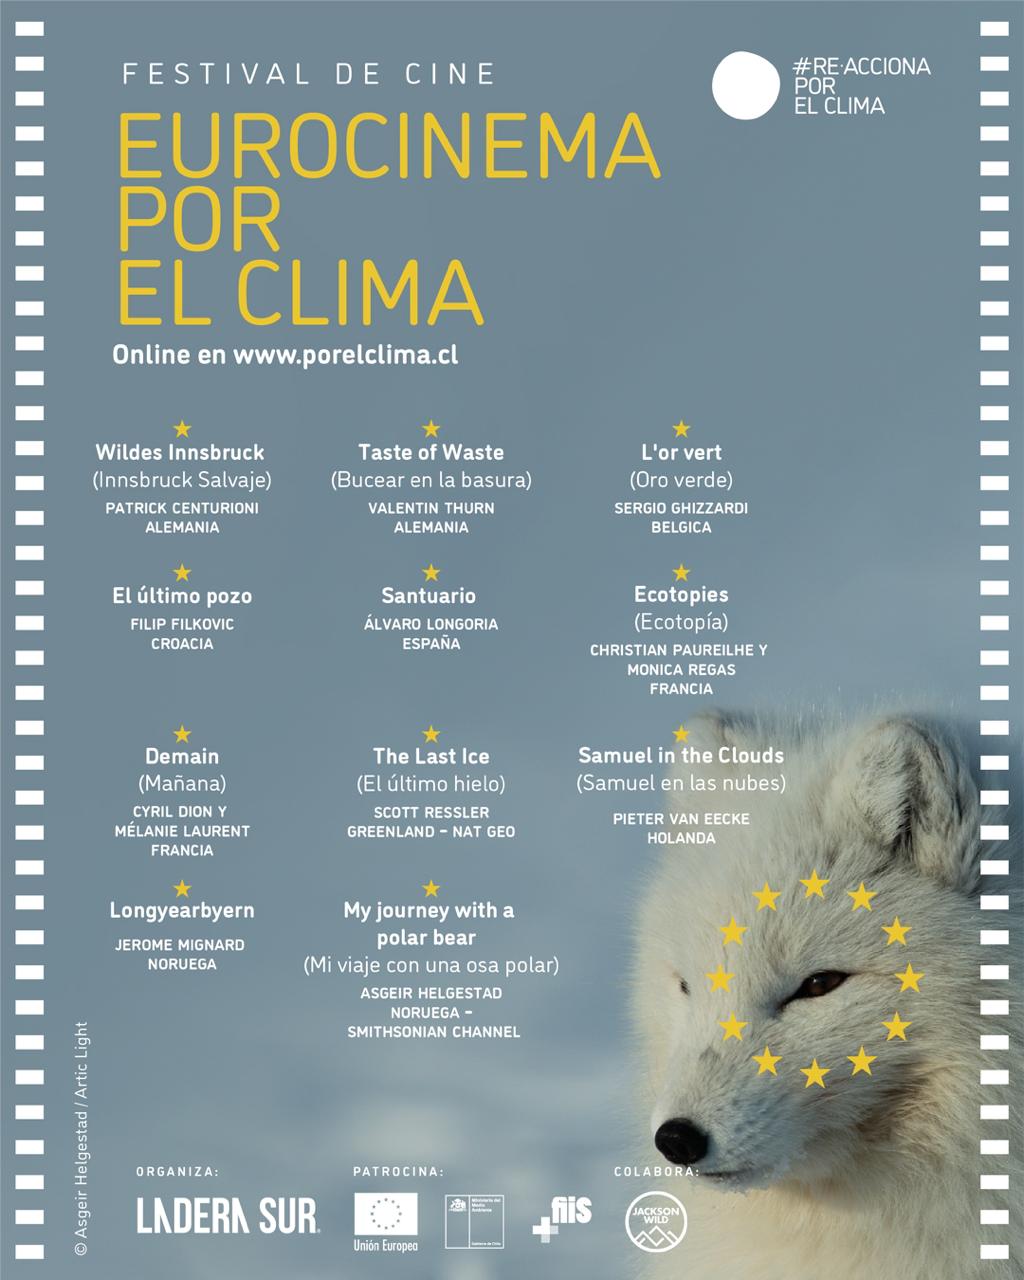 Eurocinema por el Clima: conoce los imperdibles documentales que serán parte del festival de cine sobre cambio climático